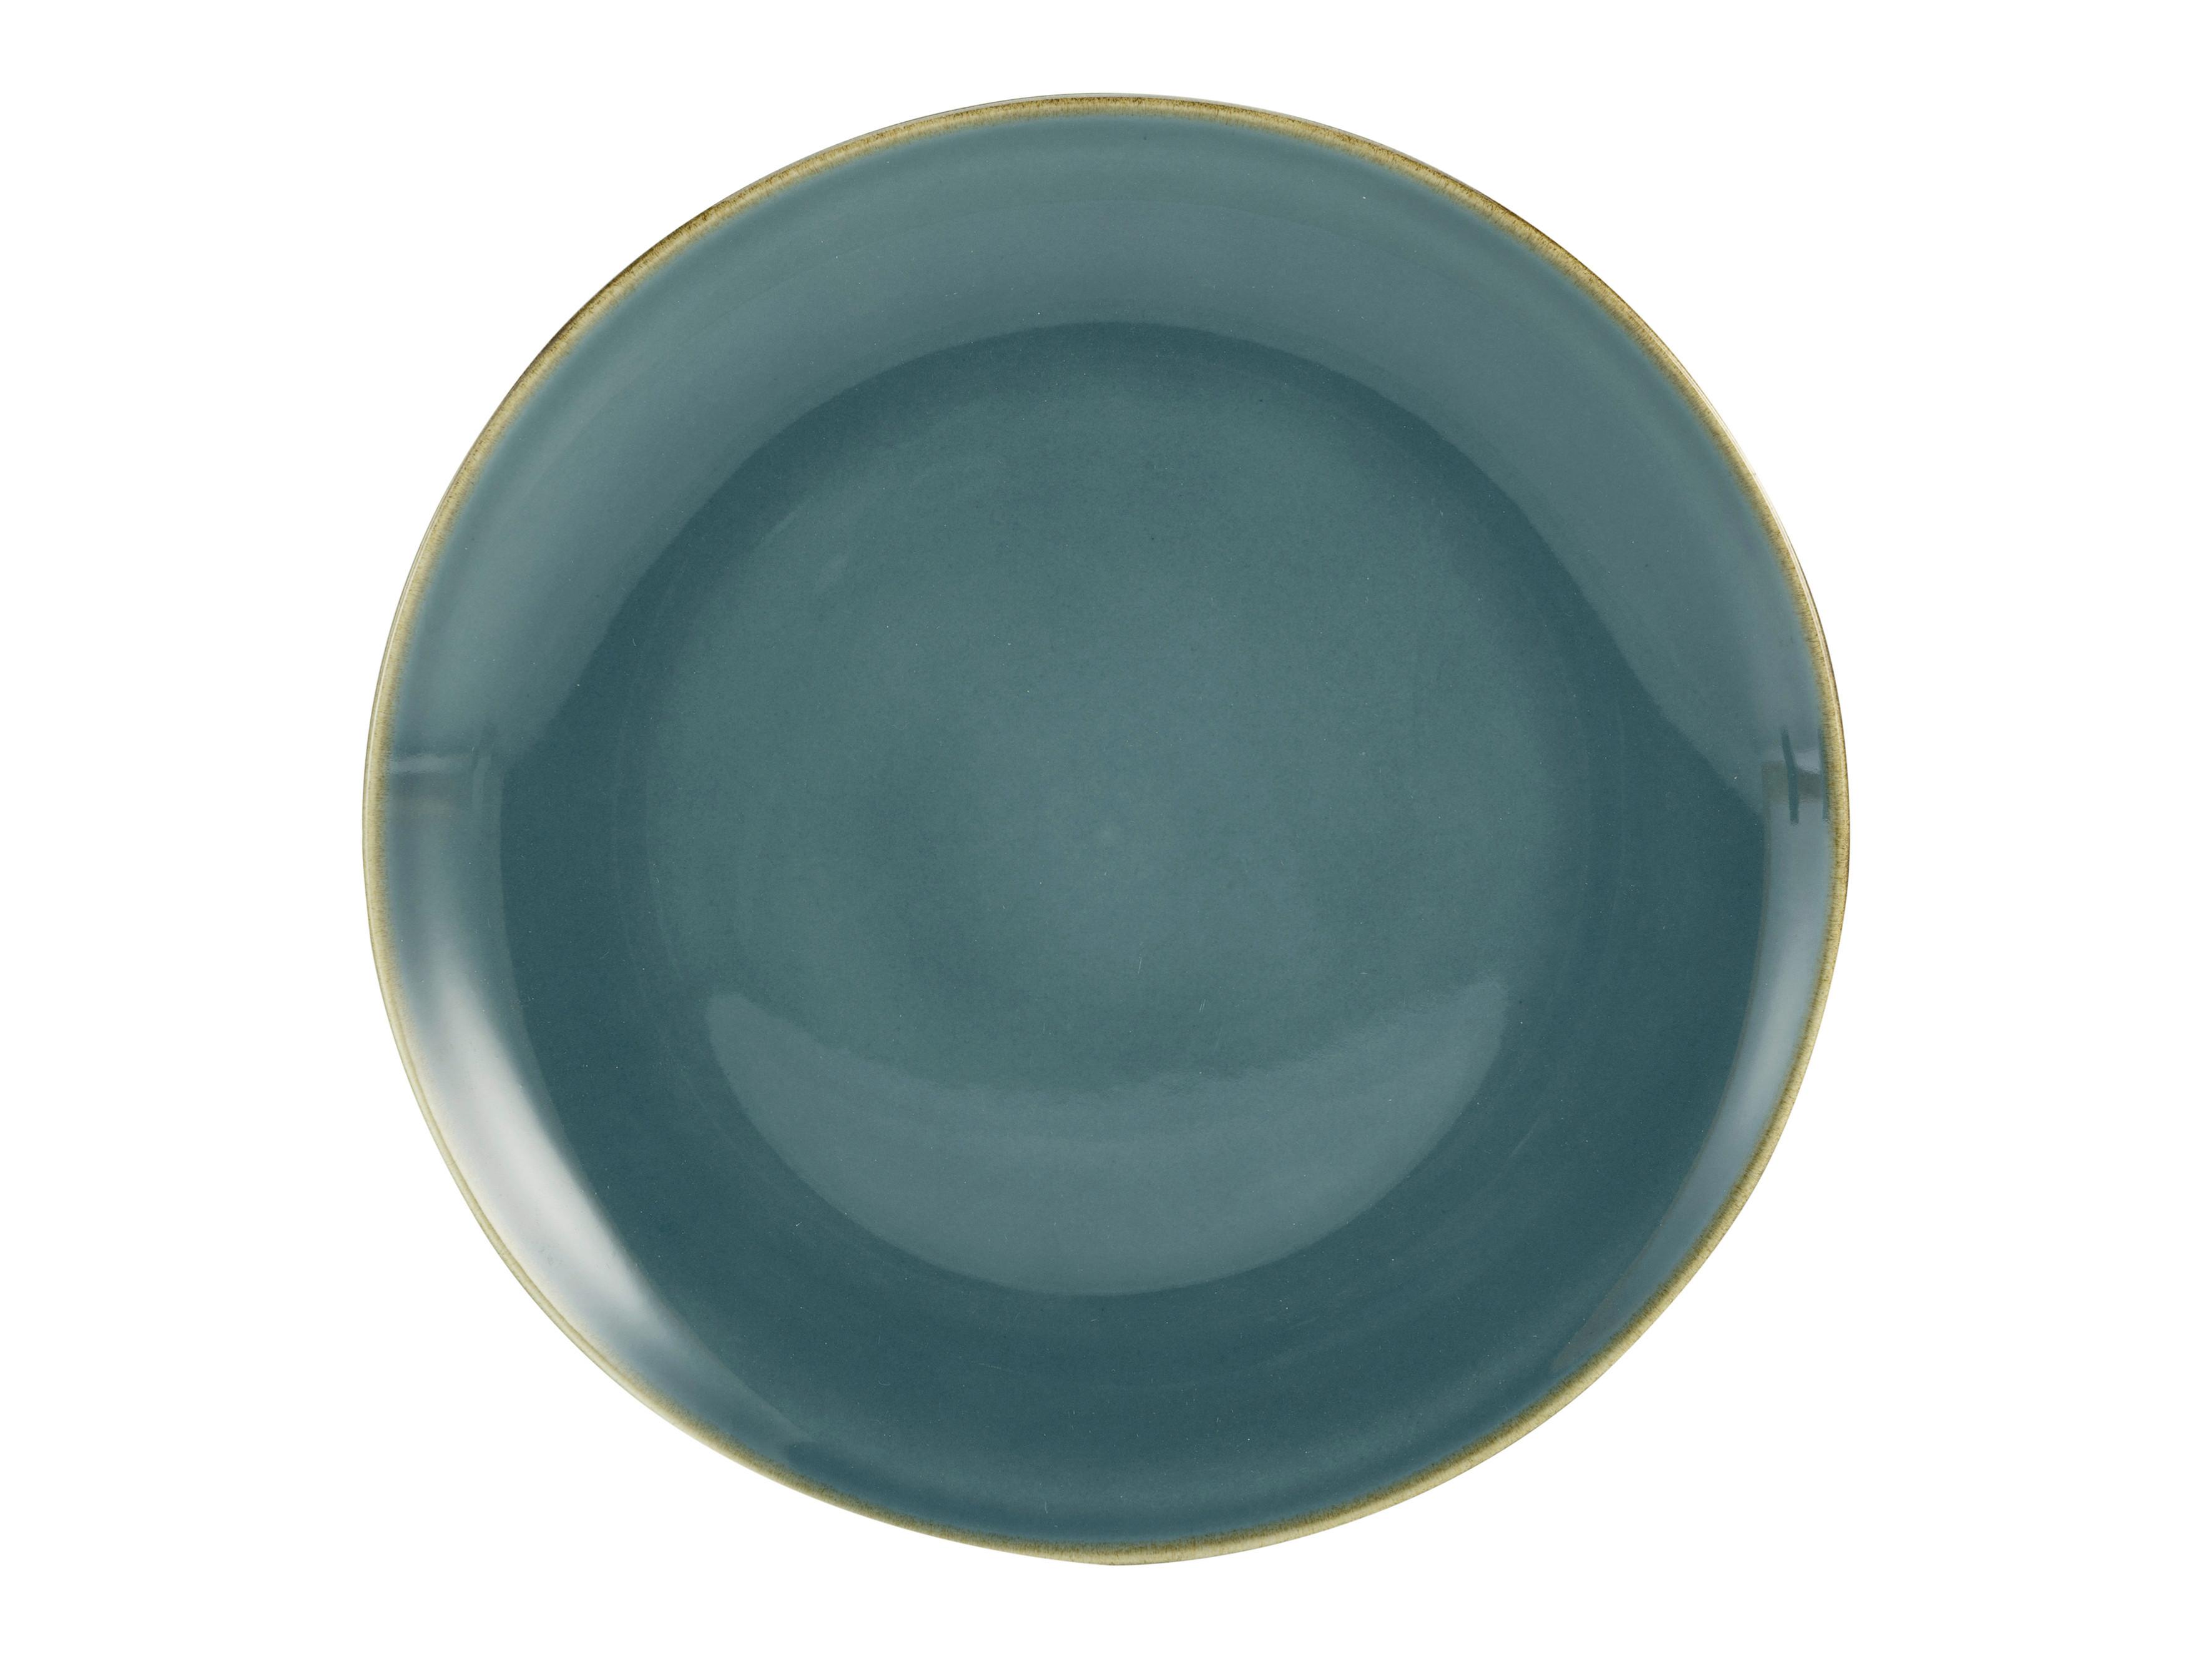 Tanjur Plitki Linen - plava, keramika (28/28/3cm) - Premium Living